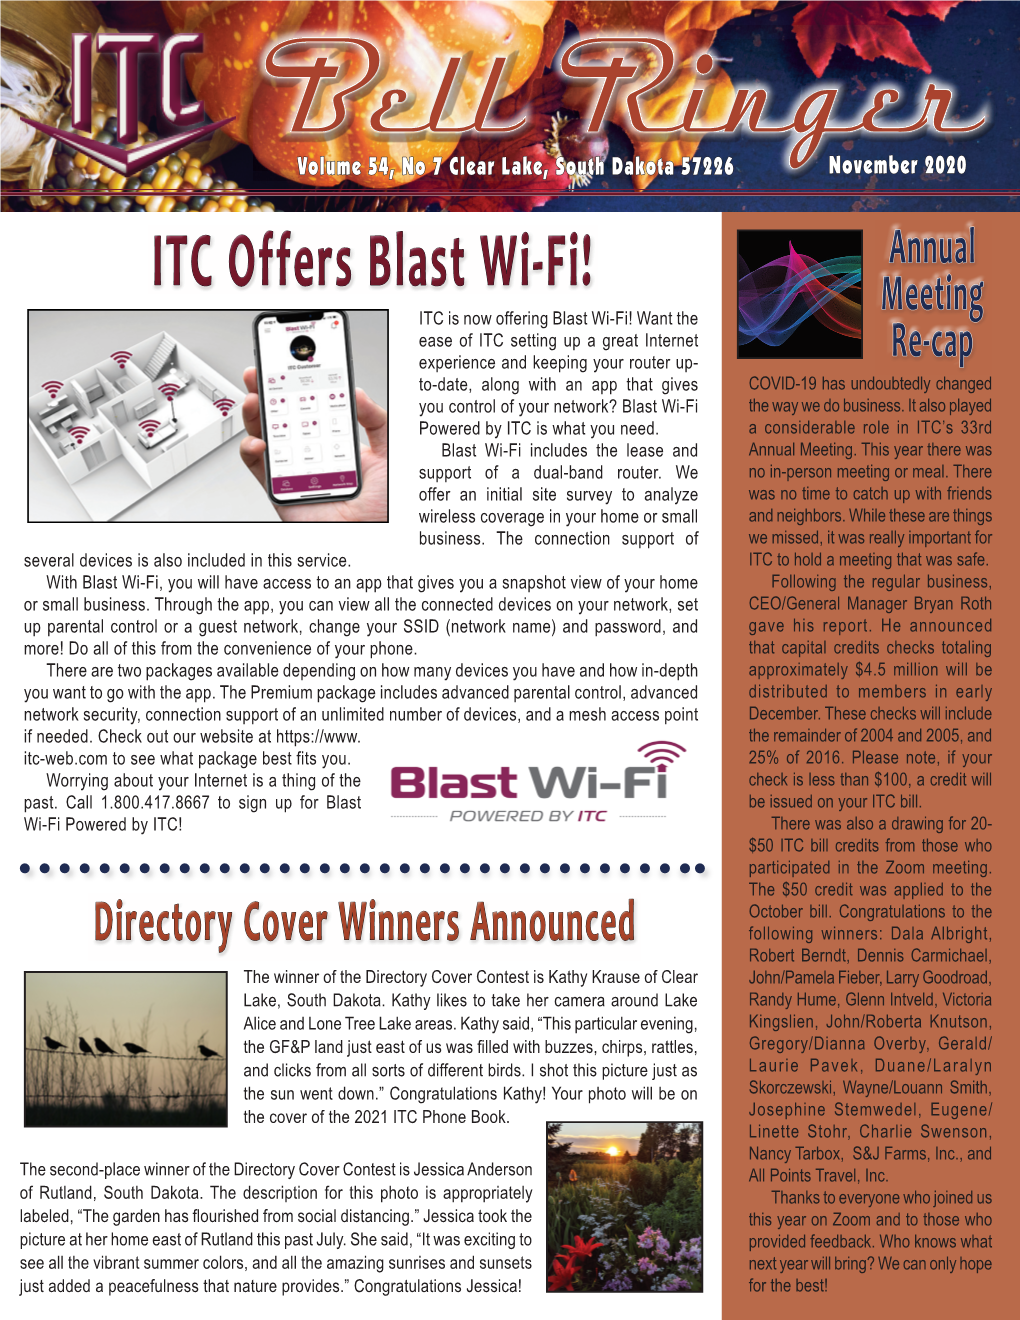 ITC Offers Blast Wi-Fi!